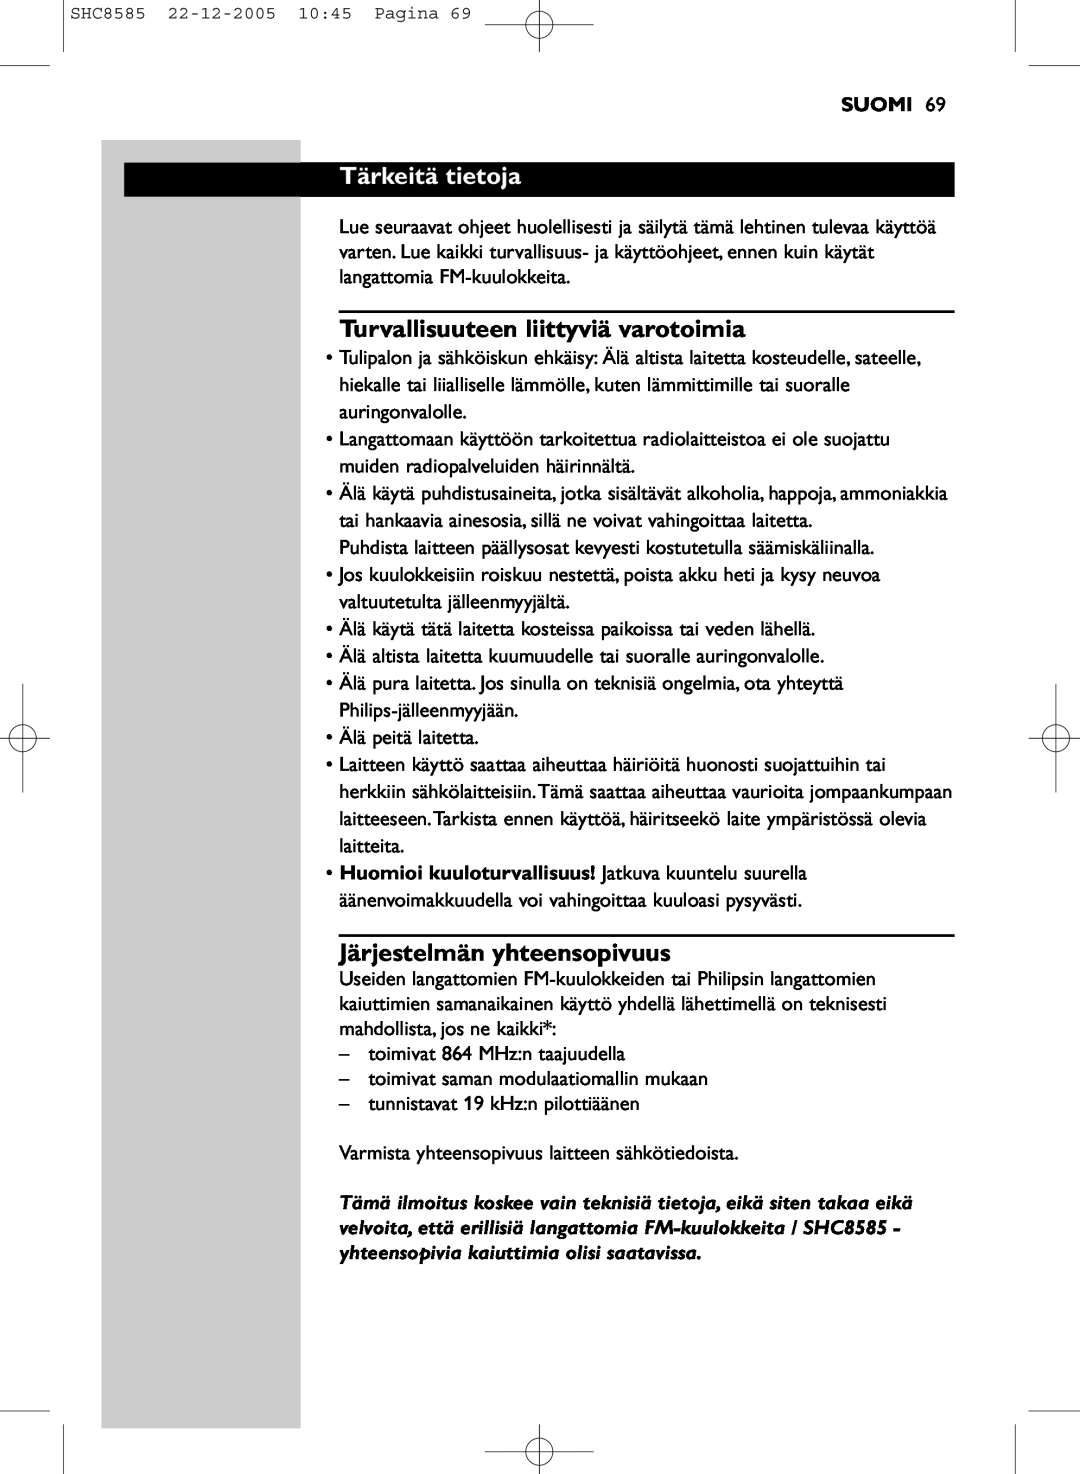 Philips SHC8585/05 manual Tärkeitä tietoja, Turvallisuuteen liittyviä varotoimia, Järjestelmän yhteensopivuus, Suomi 